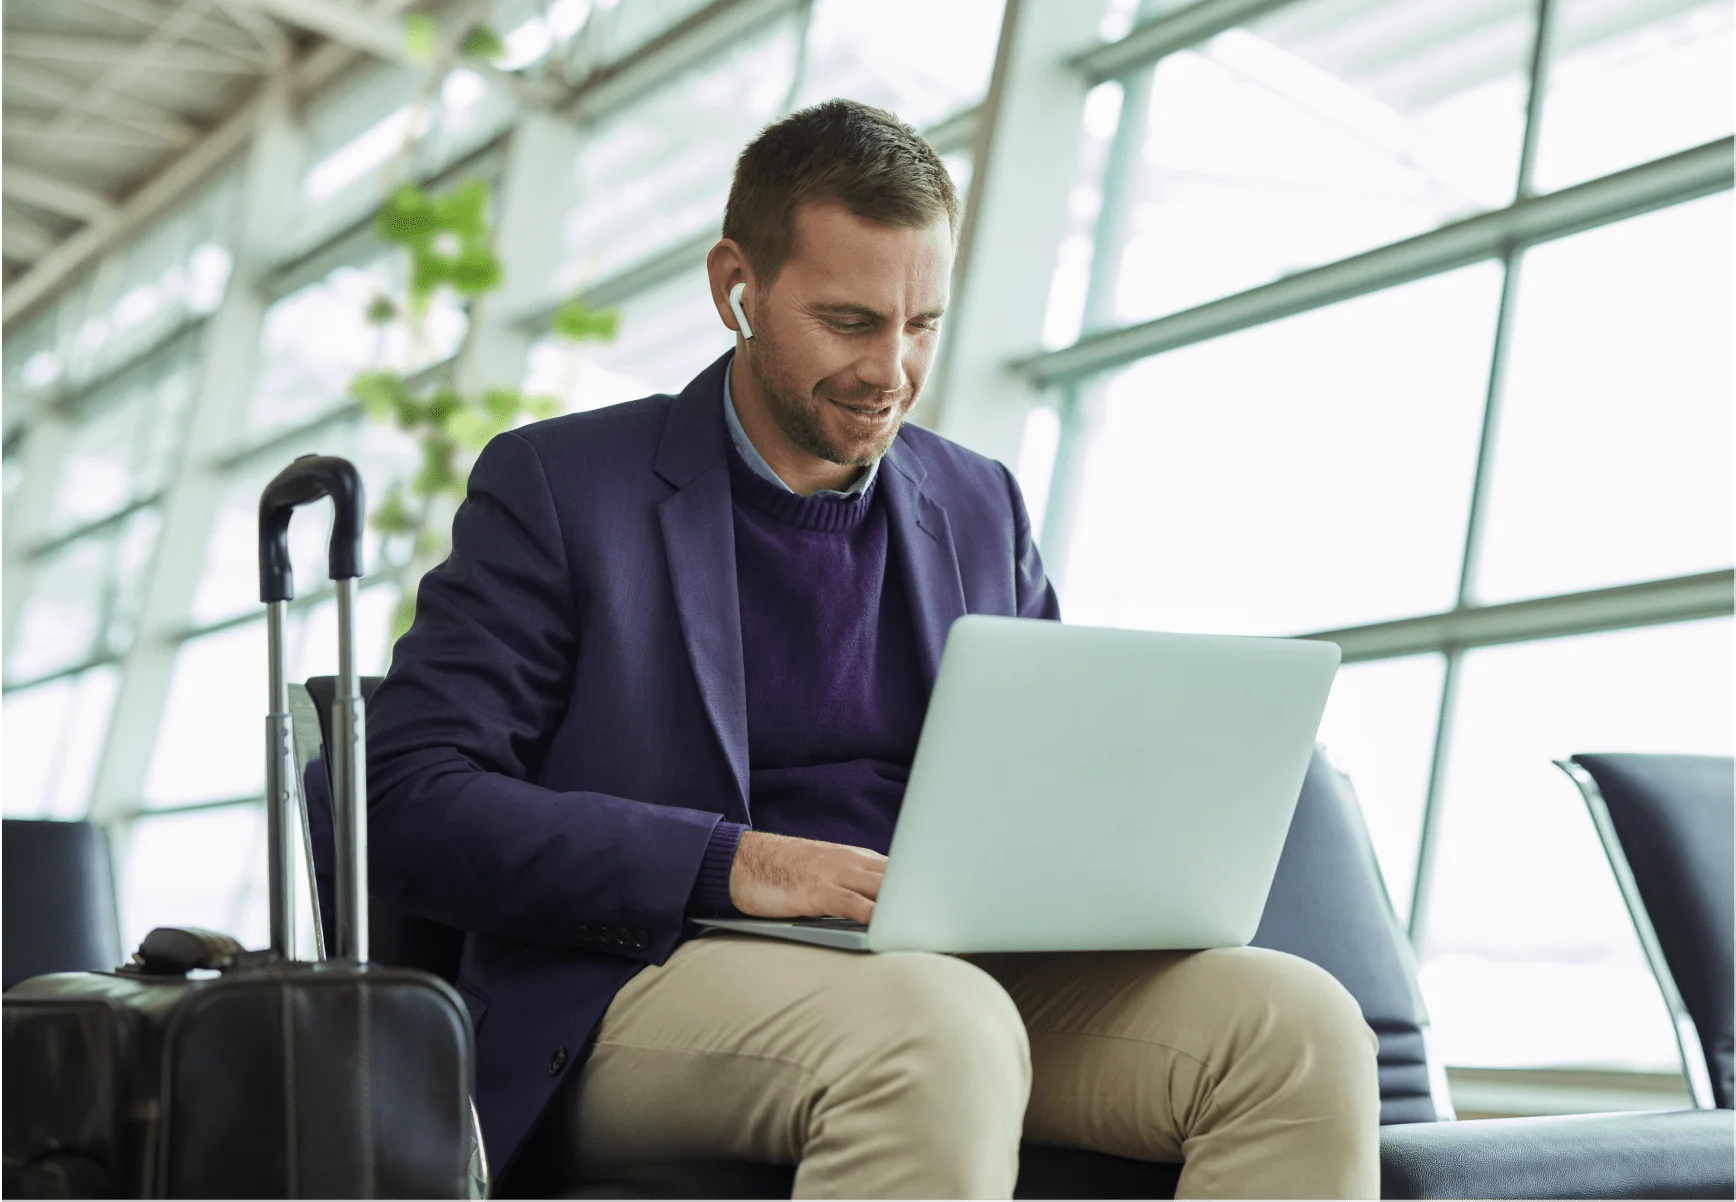 Un homme bien habillé assis dans une zone d'attente d'un aéroport – il porte des écouteurs et s’affaire sur son ordinateur portable.